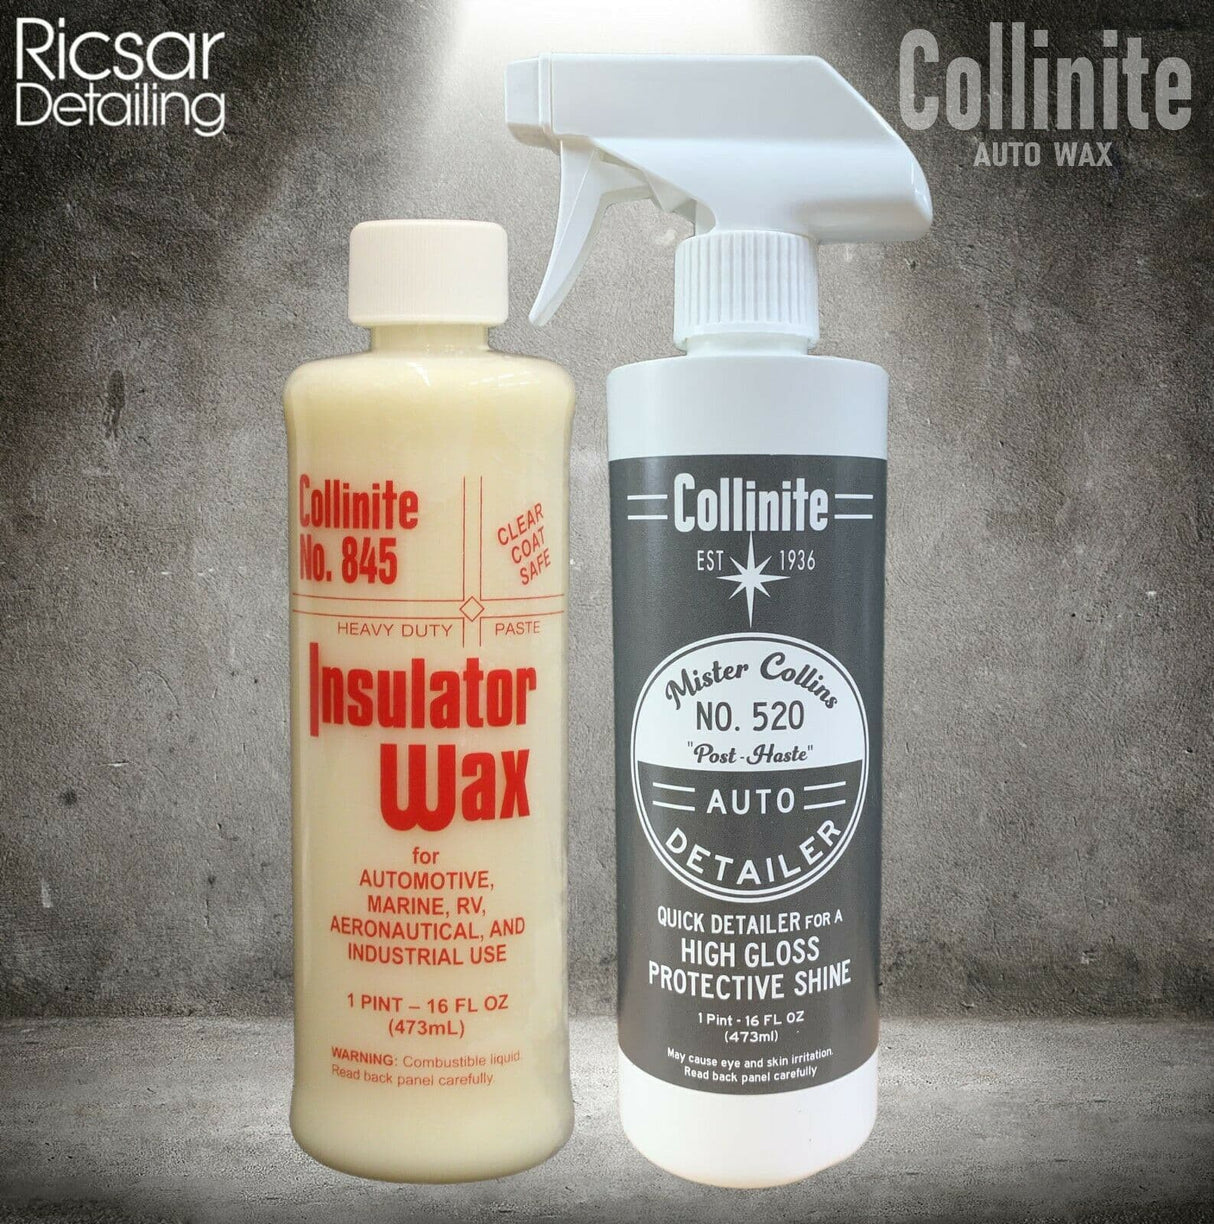 Collinite 845 Insulator Wax + Collinite 520 'Mister Collins' Quick Detail Spray